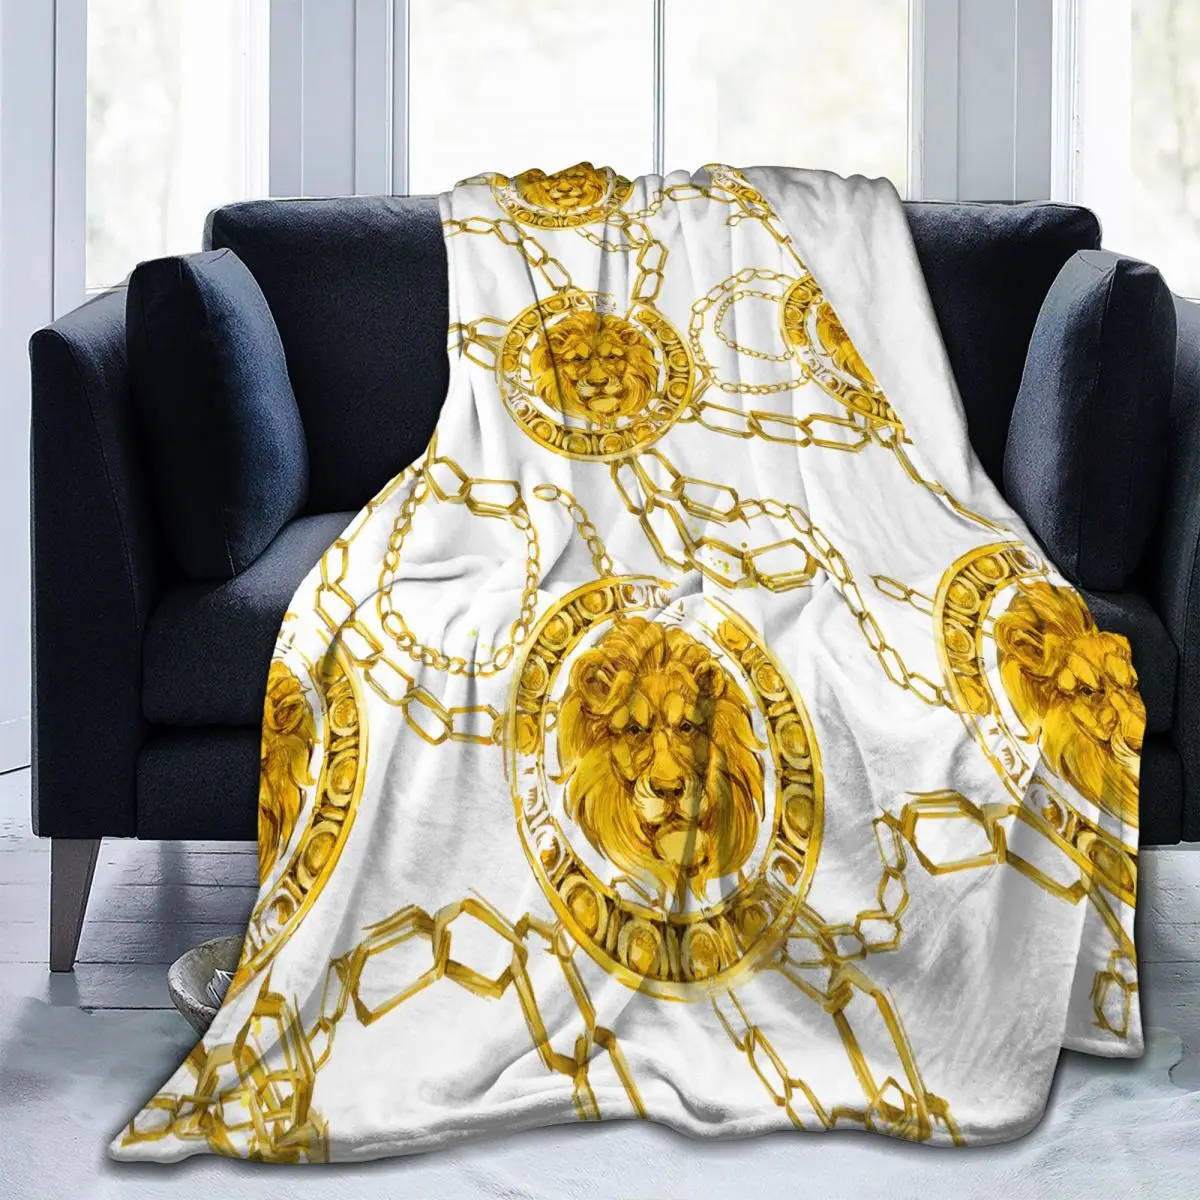 

Фланелевое Одеяло с рисунком Золотого Льва, тонкое, механическое, стирка, теплое, мягкое одеяло, покрывало на диван, кровать, для путешествий...